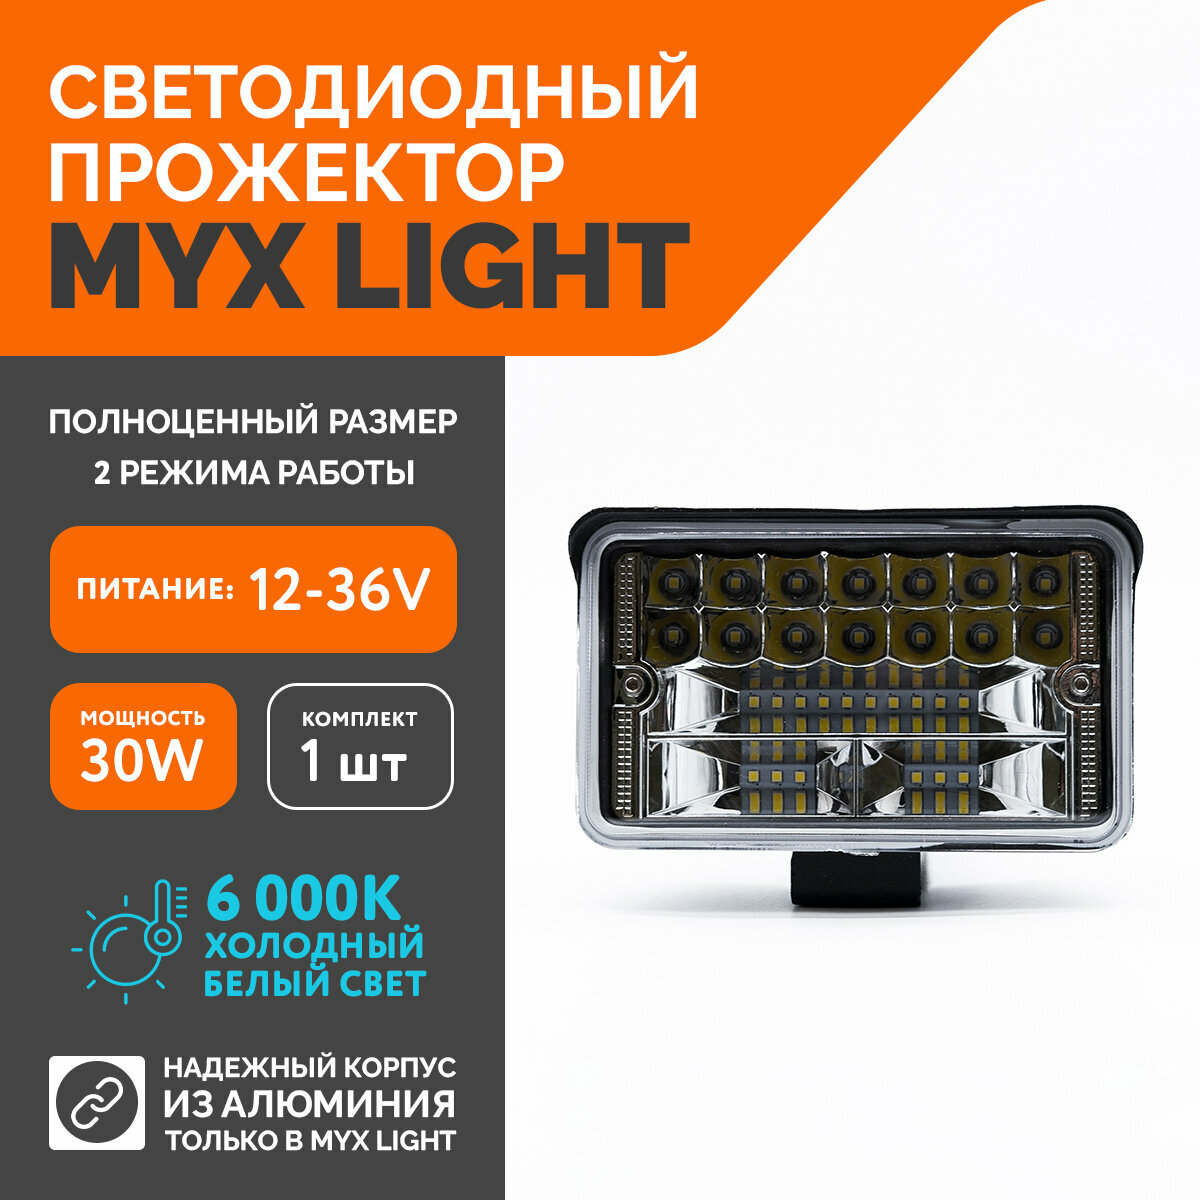 Светодиодная противотуманная фара для авто MYX-Light 12-36V мощность 30W 6000K прожектор, дневные ходовые огни для легковых и грузовых авто, джипов, квадроциклов 1шт